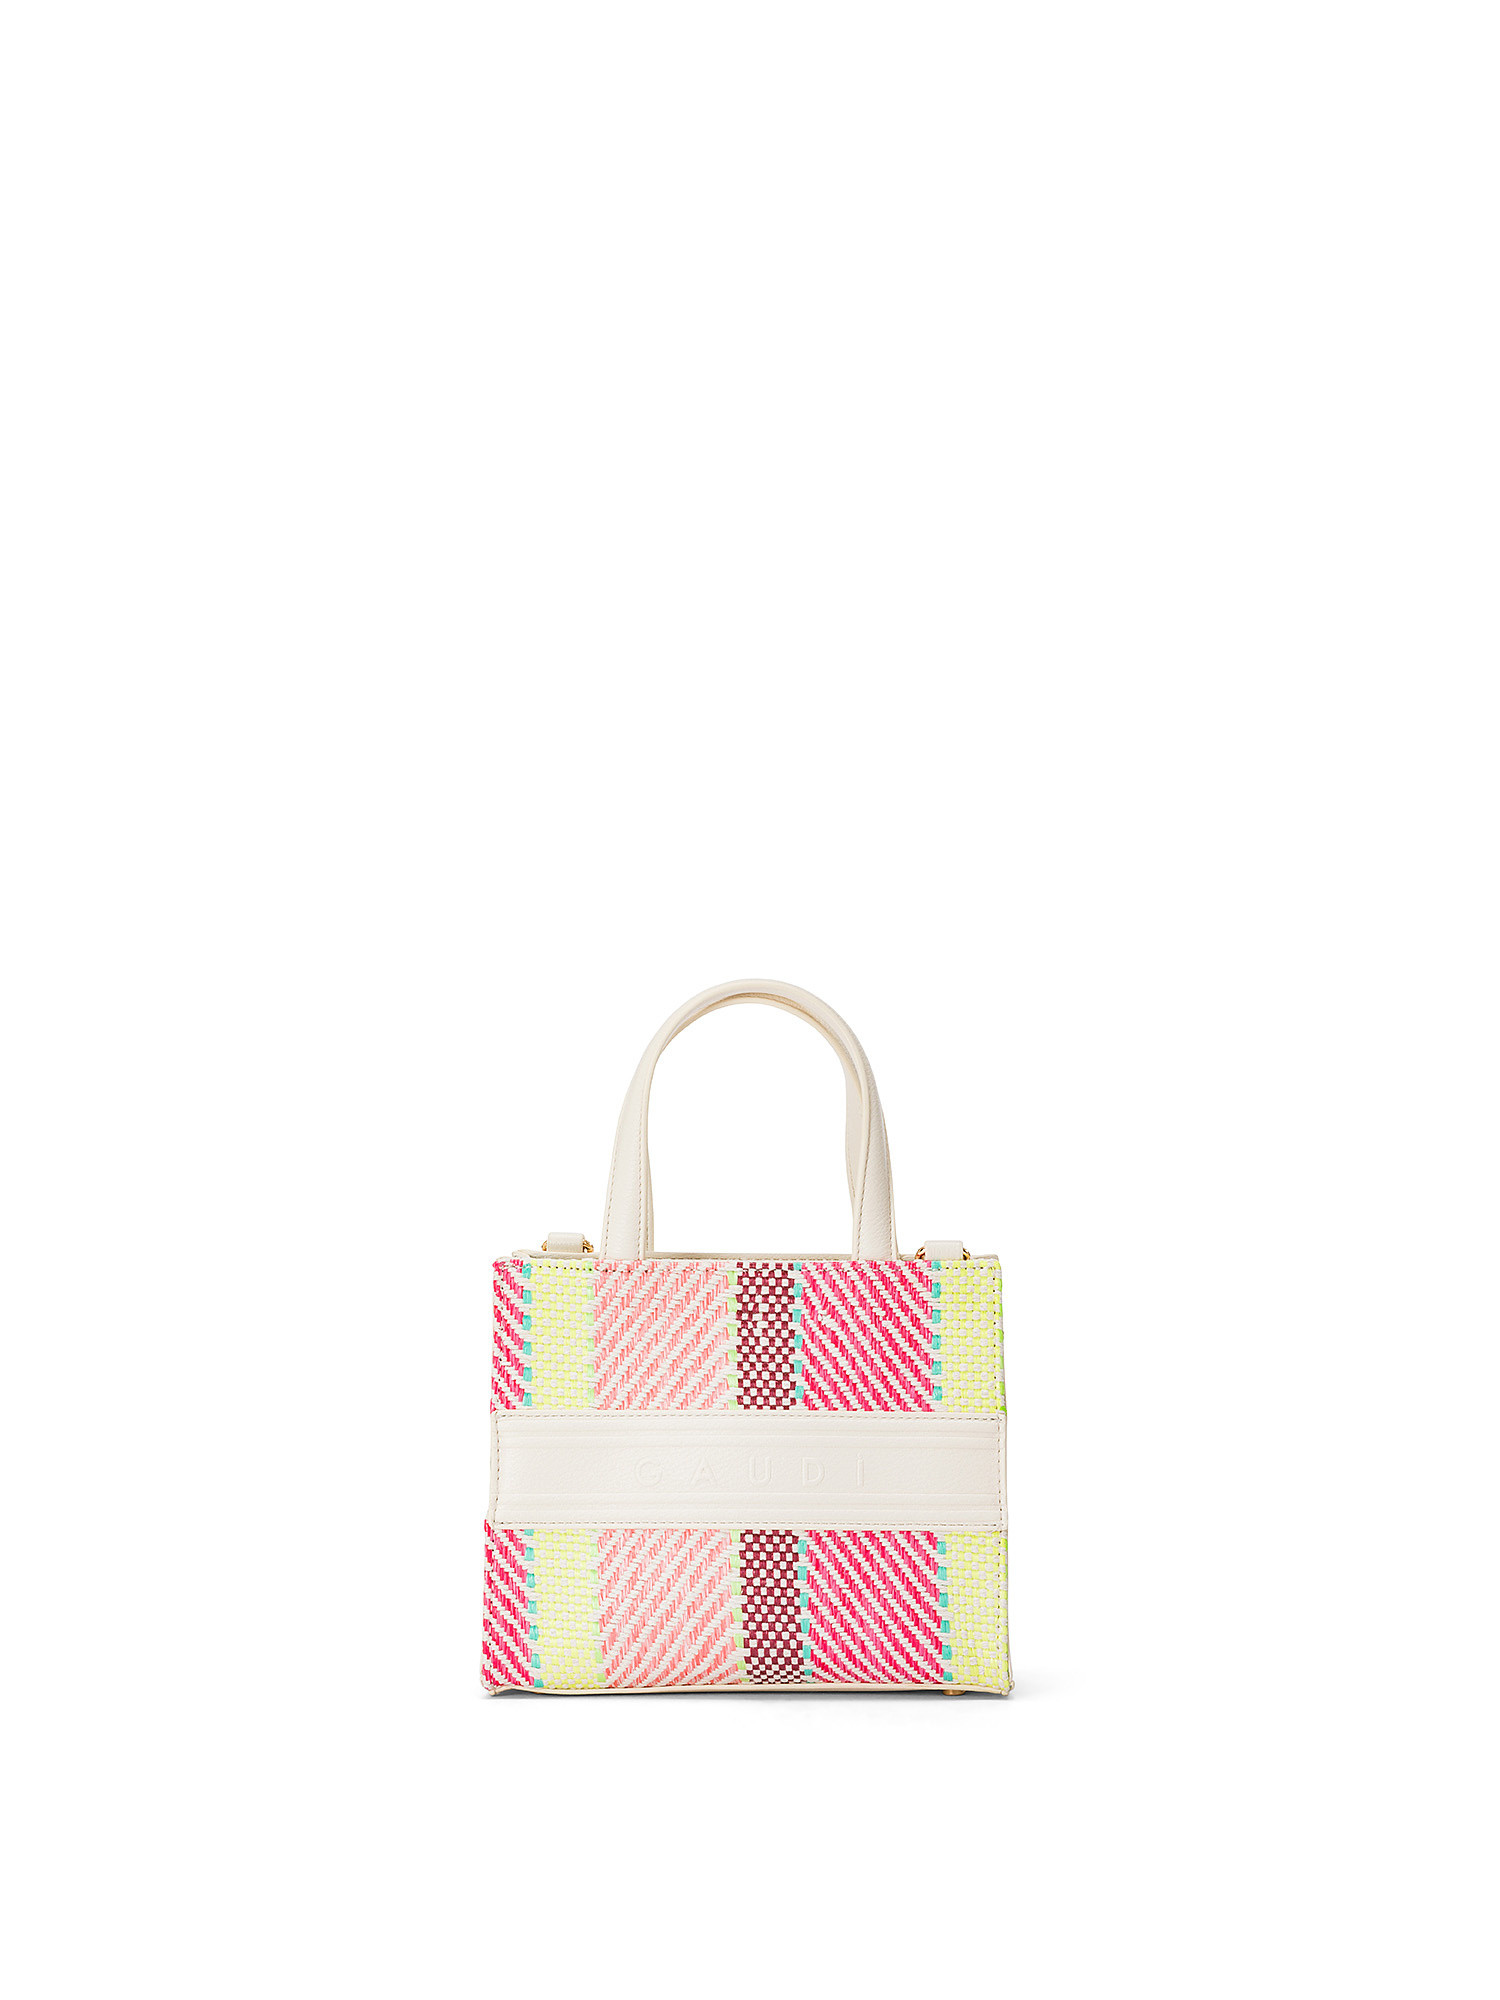 Gaudì - Raffia and imitation leather mini shopping bag, White, large image number 0